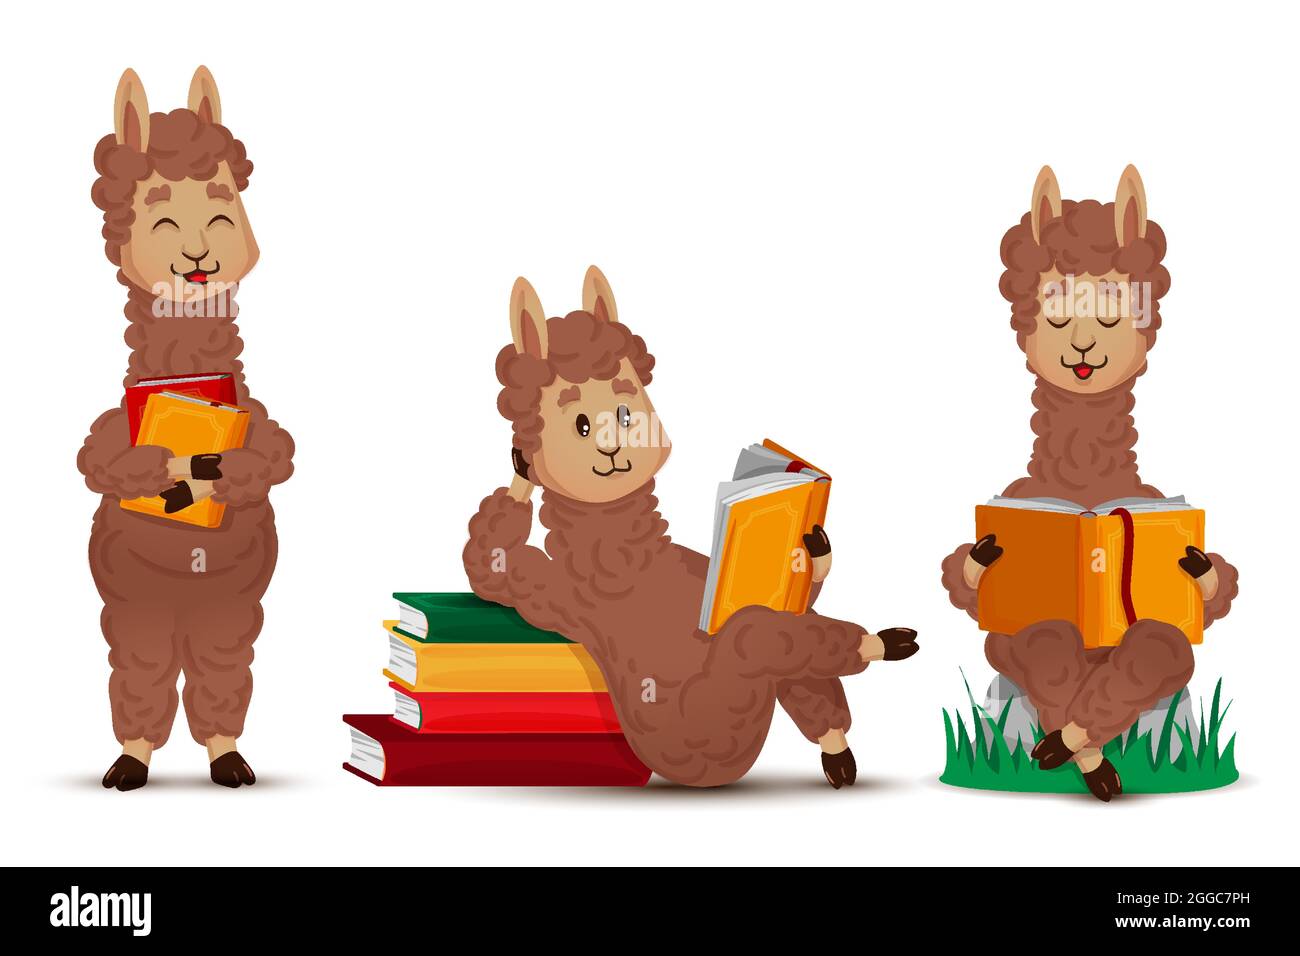 Llama alpaca lee un libro, un conjunto de figuras animales aisladas. Ilustración vectorial en dibujos animados, estilo plano Ilustración del Vector